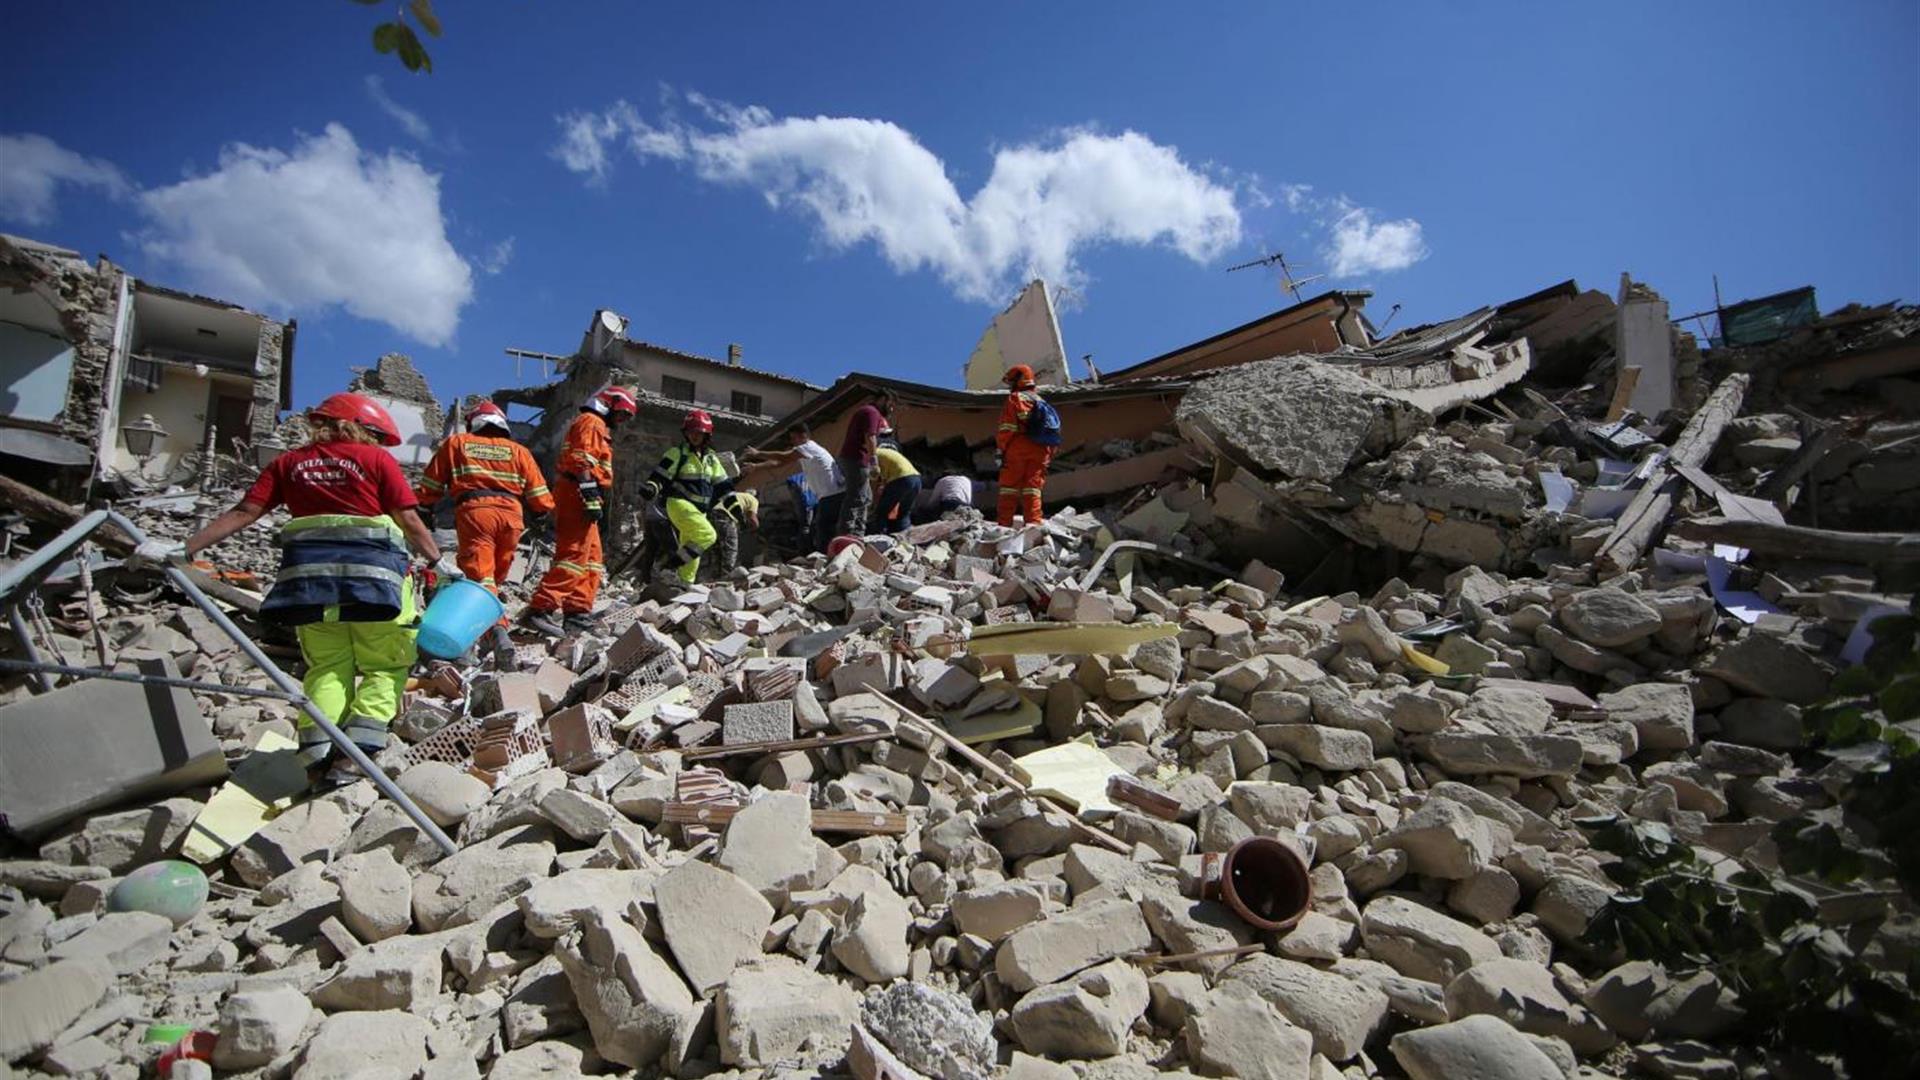 Terremoto In Centro Italia Le Immagini Di Amatrice Distrutta 4 1